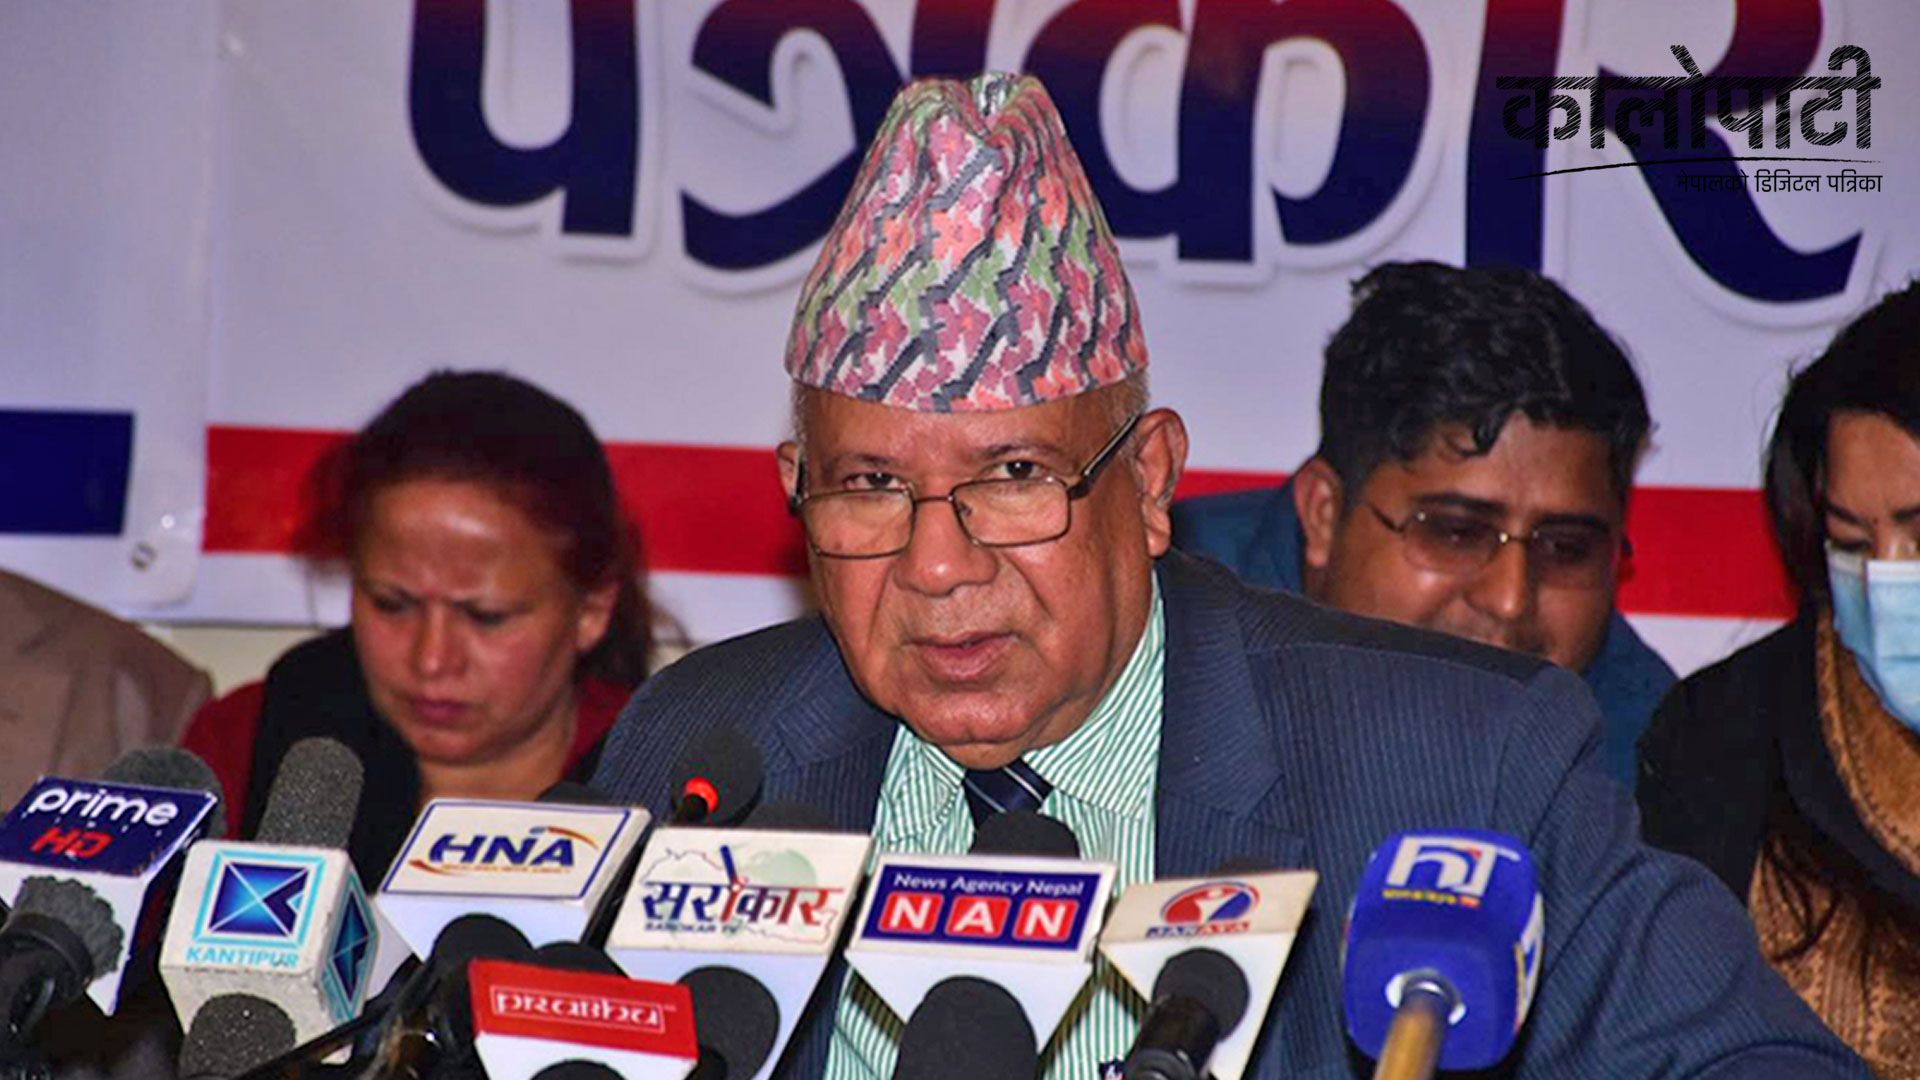 ‘एमसीसीका सम्बन्धमा भएका भ्रमहरुको निवारण व्याख्यात्मक घोषणाले प्रष्ट पारेको छ’: अध्यक्ष नेपाल